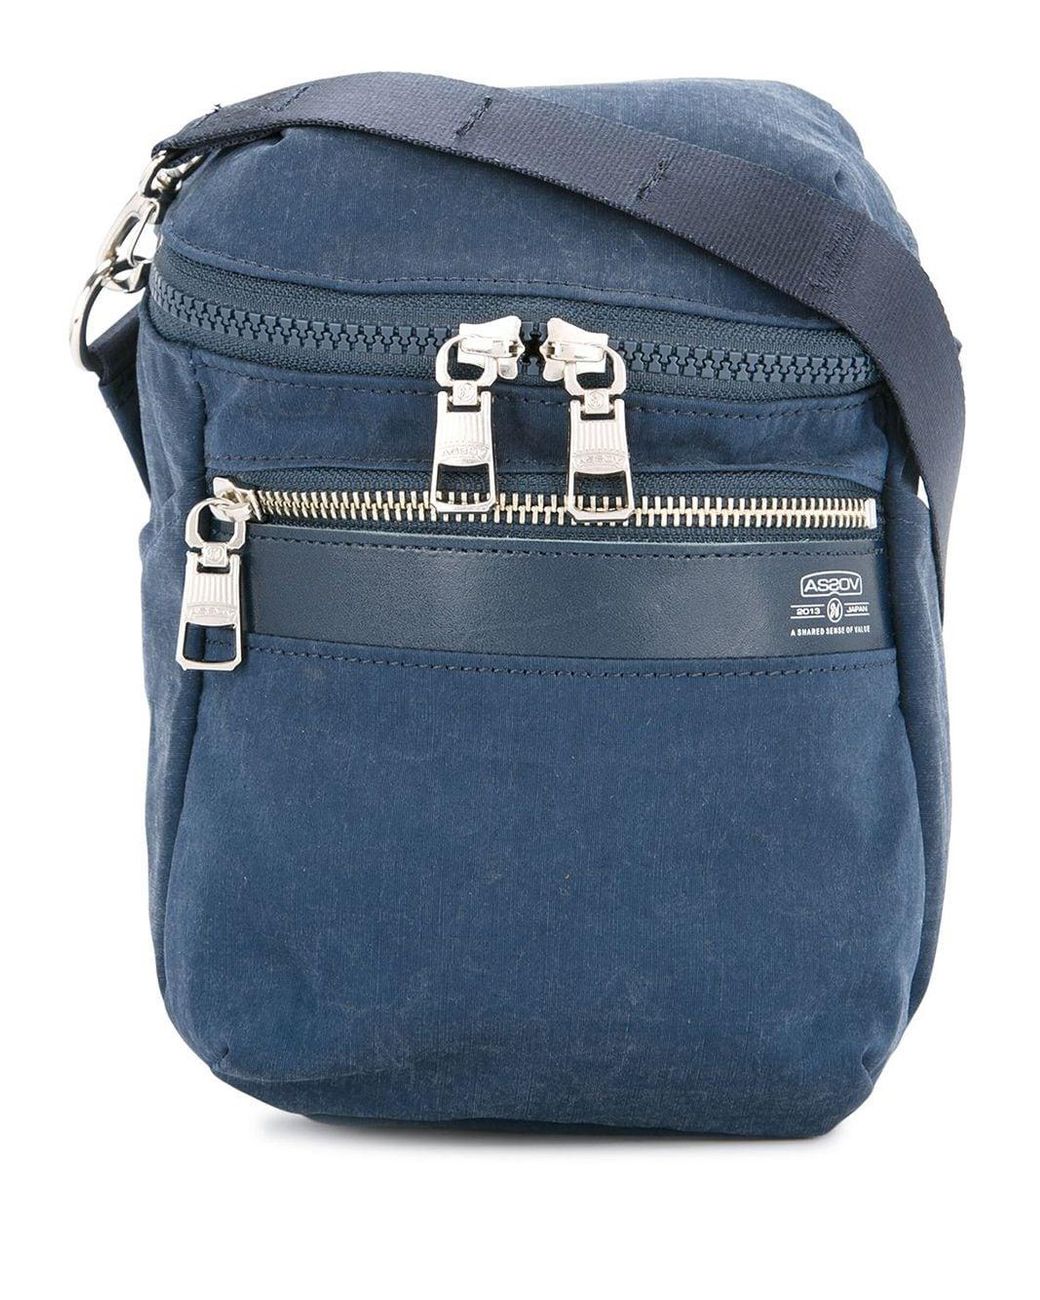 AS2OV Shrink Shoulder Bag in Blue for Men - Lyst